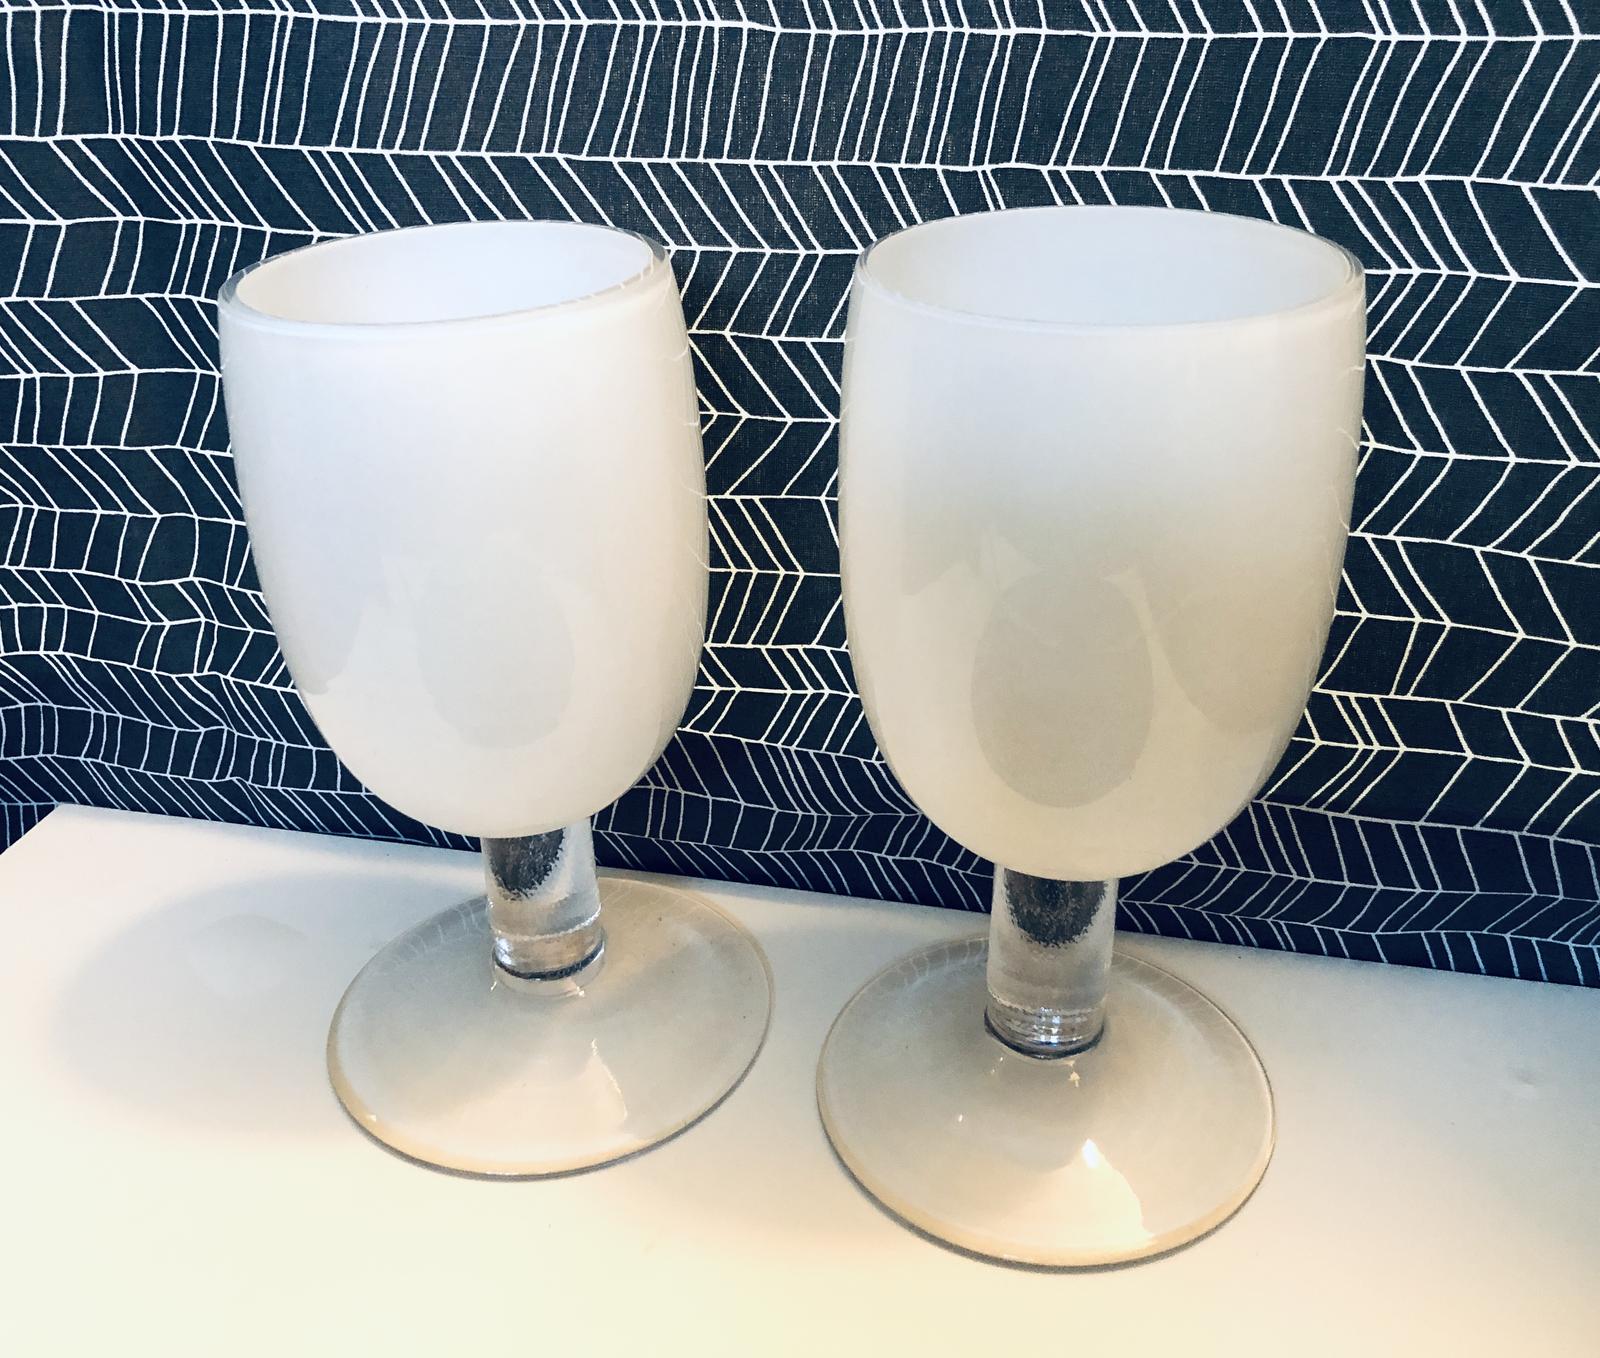 Velké sklenice, poháry, číše 2 ks - Obrázek č. 1